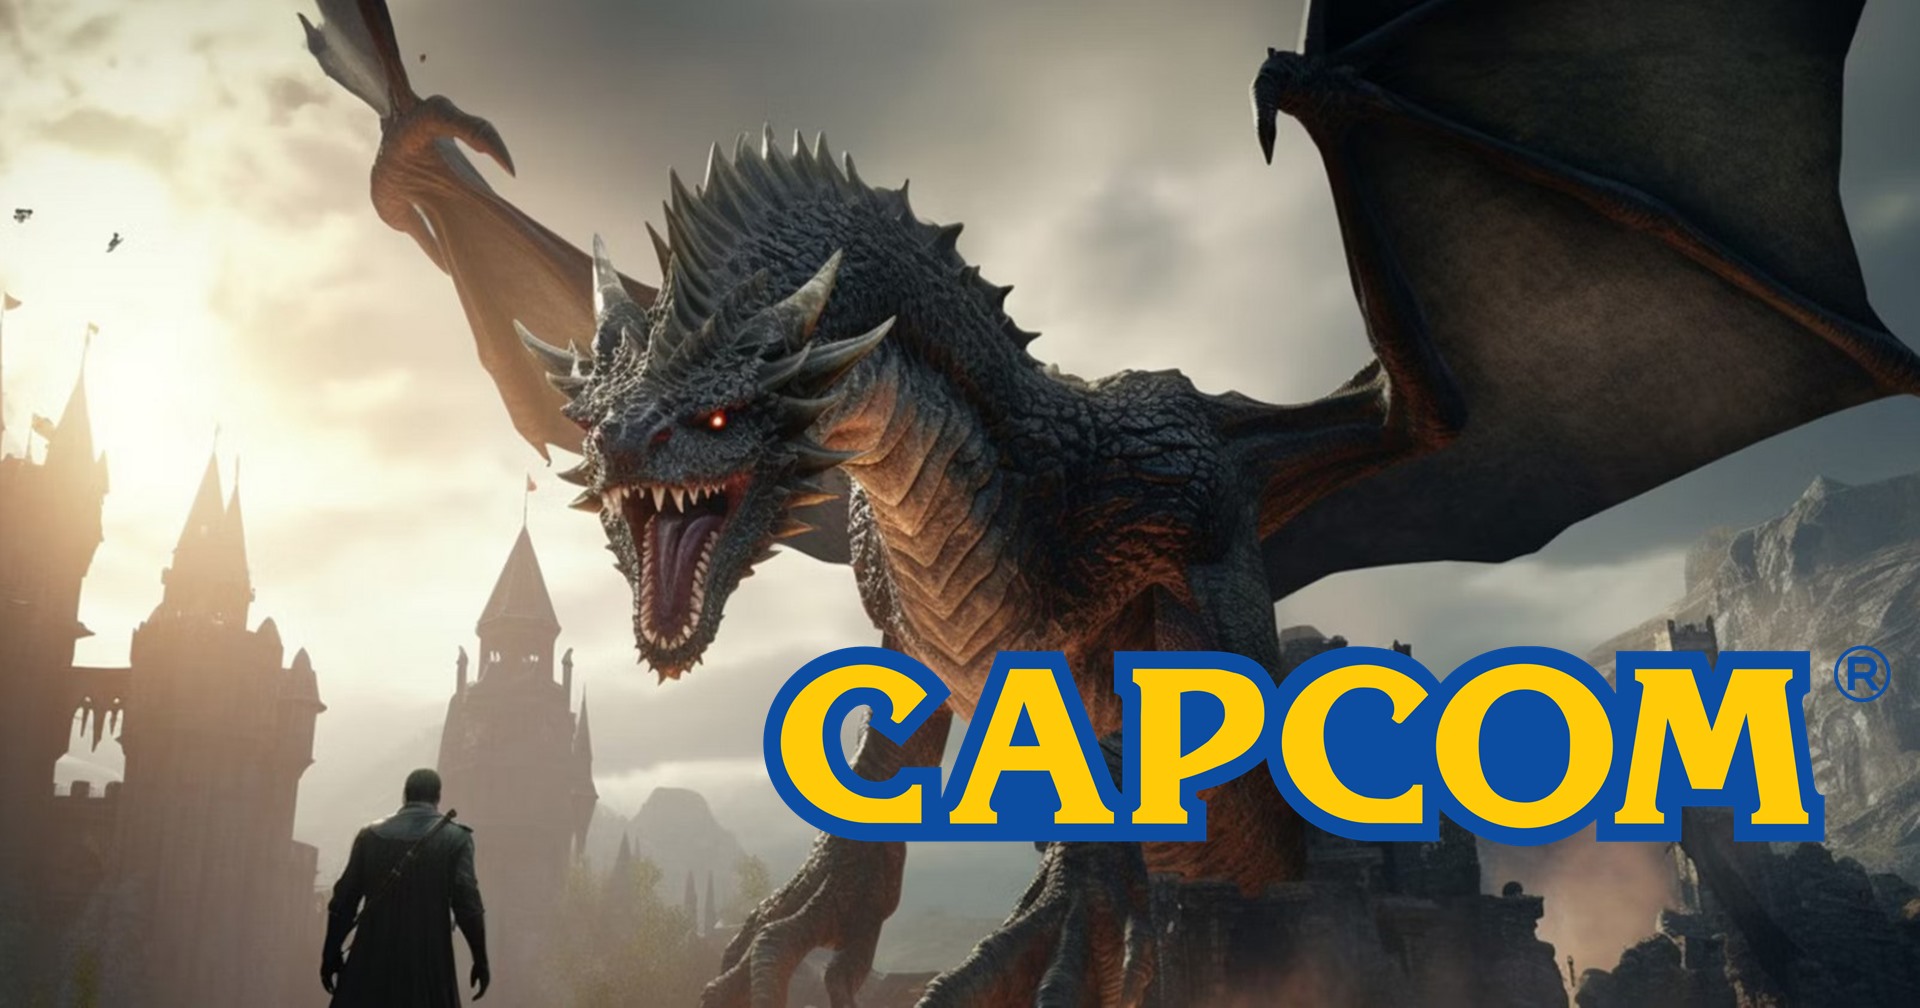 Capcom บอกถ้าซื้อเกมราคา 70 เหรียญไม่ไหวก็ให้รออีก 5 ปี ให้เกมลดราคาก่อนค่อยซื้อก็ได้